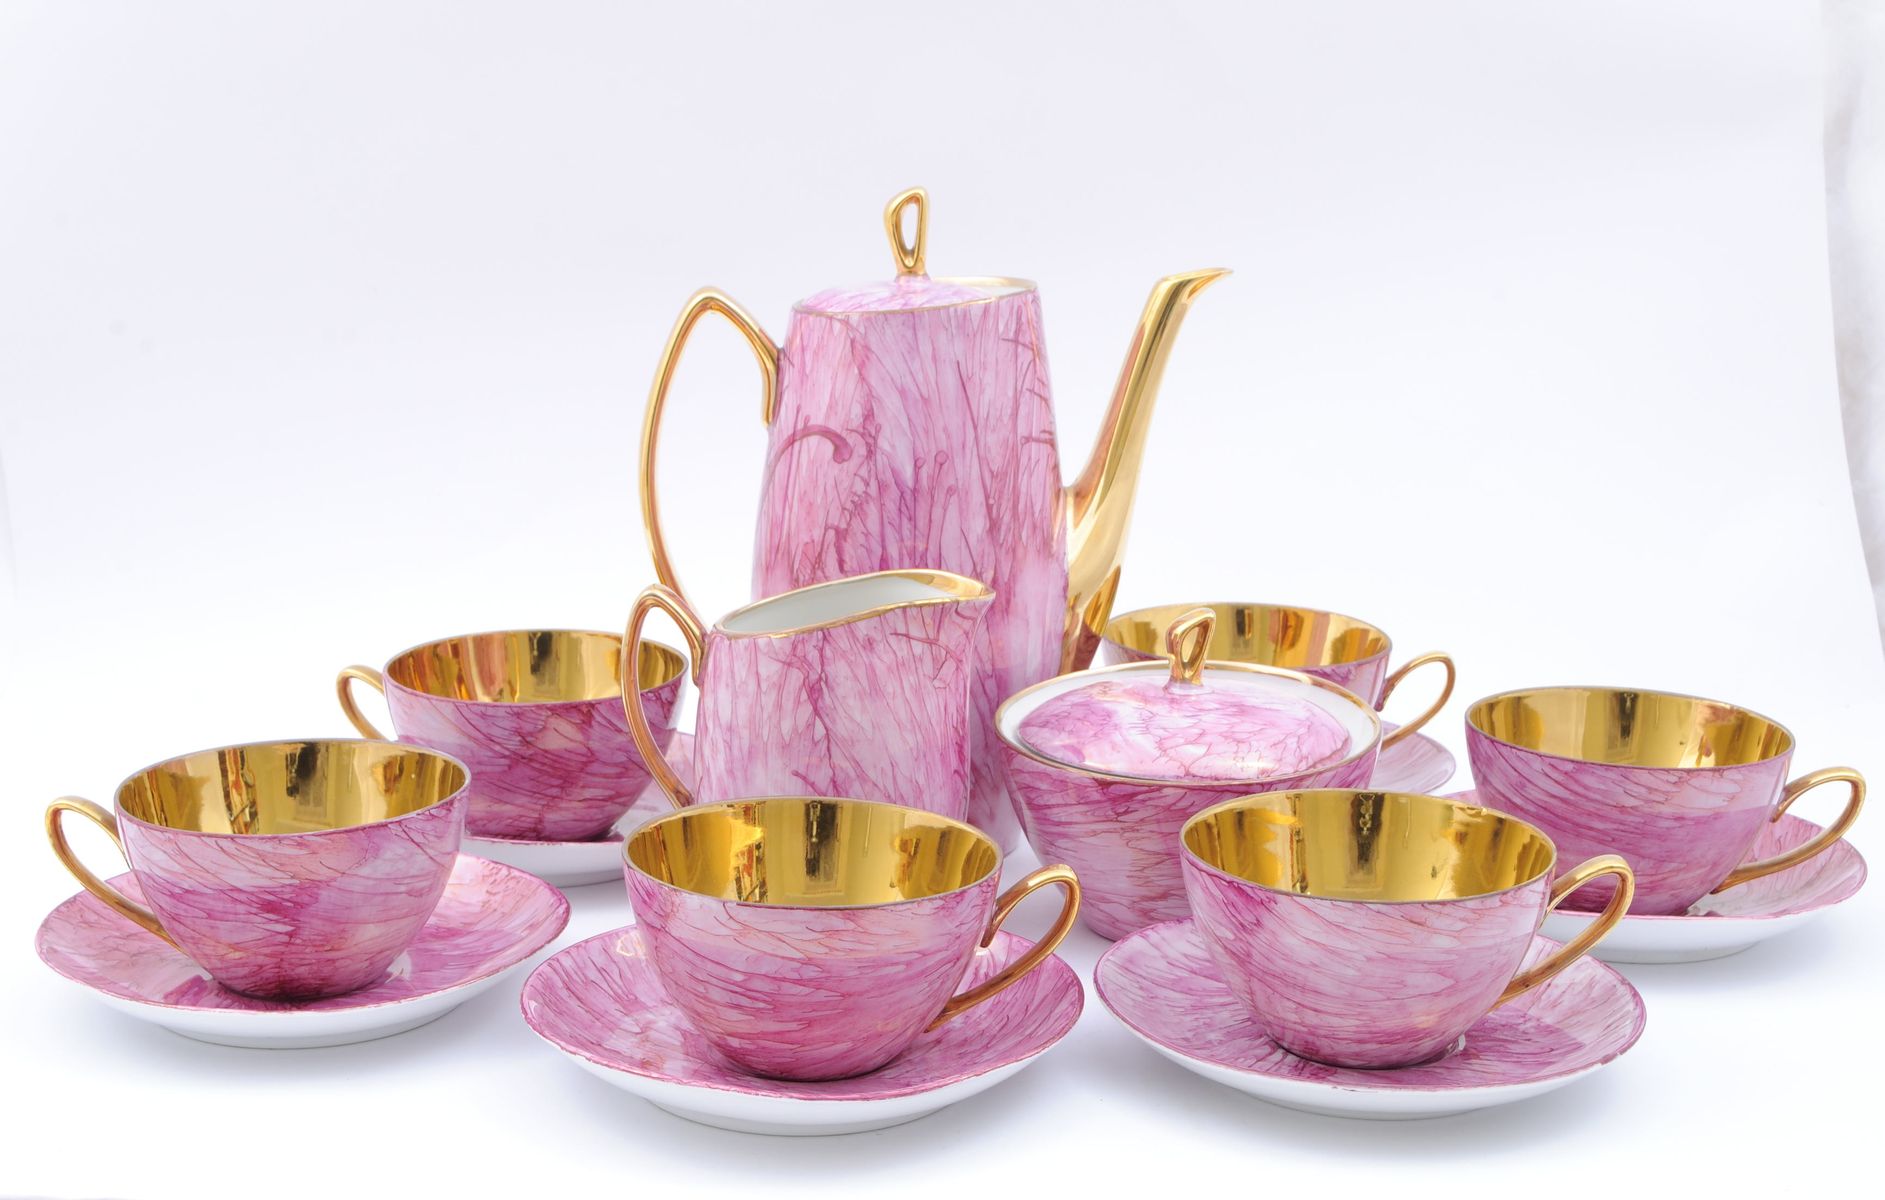 polish-porcelain-aldona-tea-set-by-jozef-wrzesien-for-cmielow-and-chodziez-factories-1960s-1.jpg